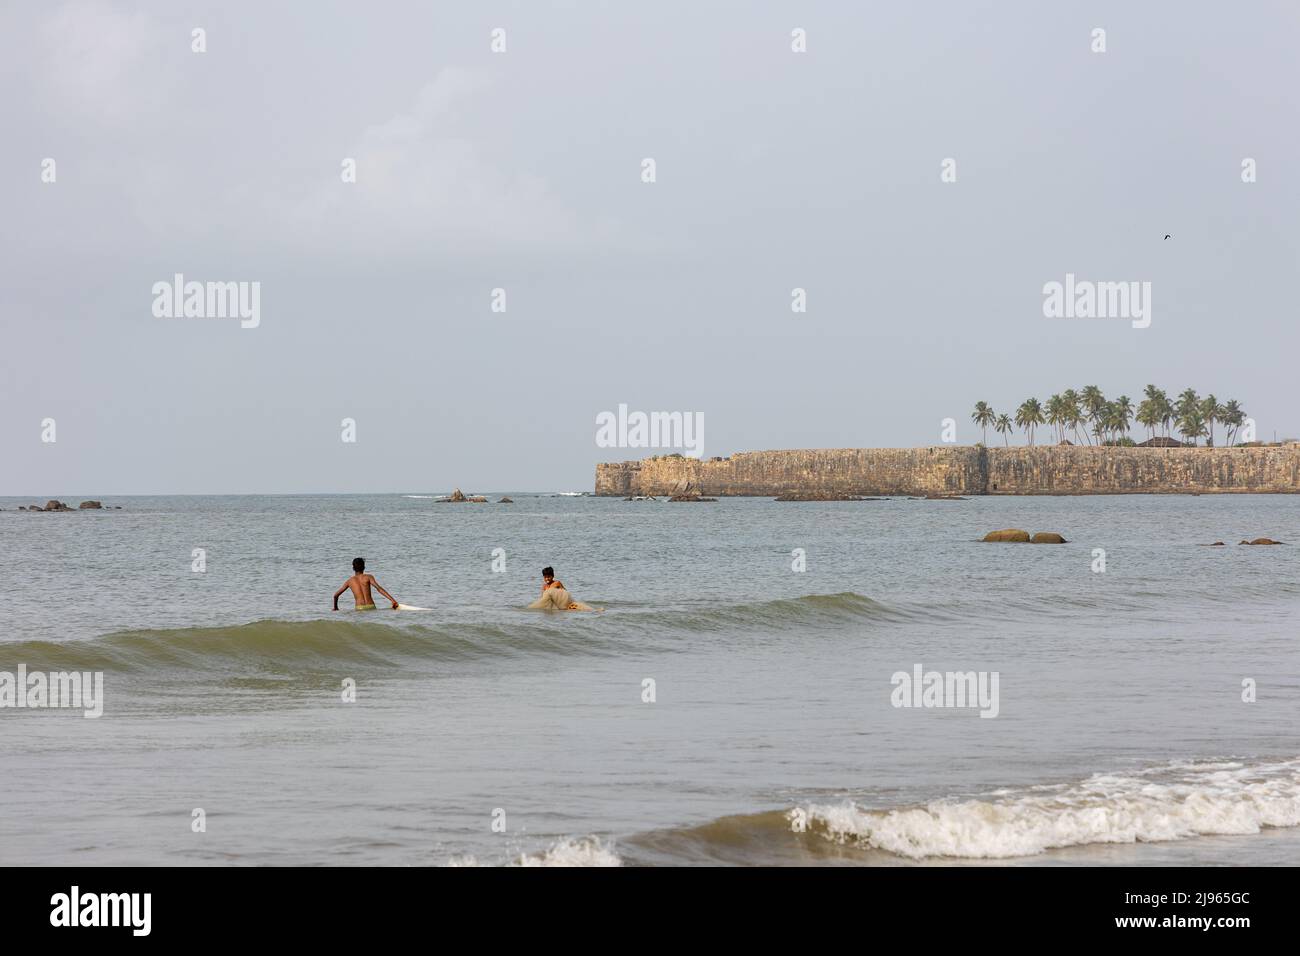 Deux pêcheurs s'aventurant dans la mer pour déposer des filets de pêche tandis que l'énorme mur en pierre du fort de Sindhudurg est vu en arrière-plan Banque D'Images